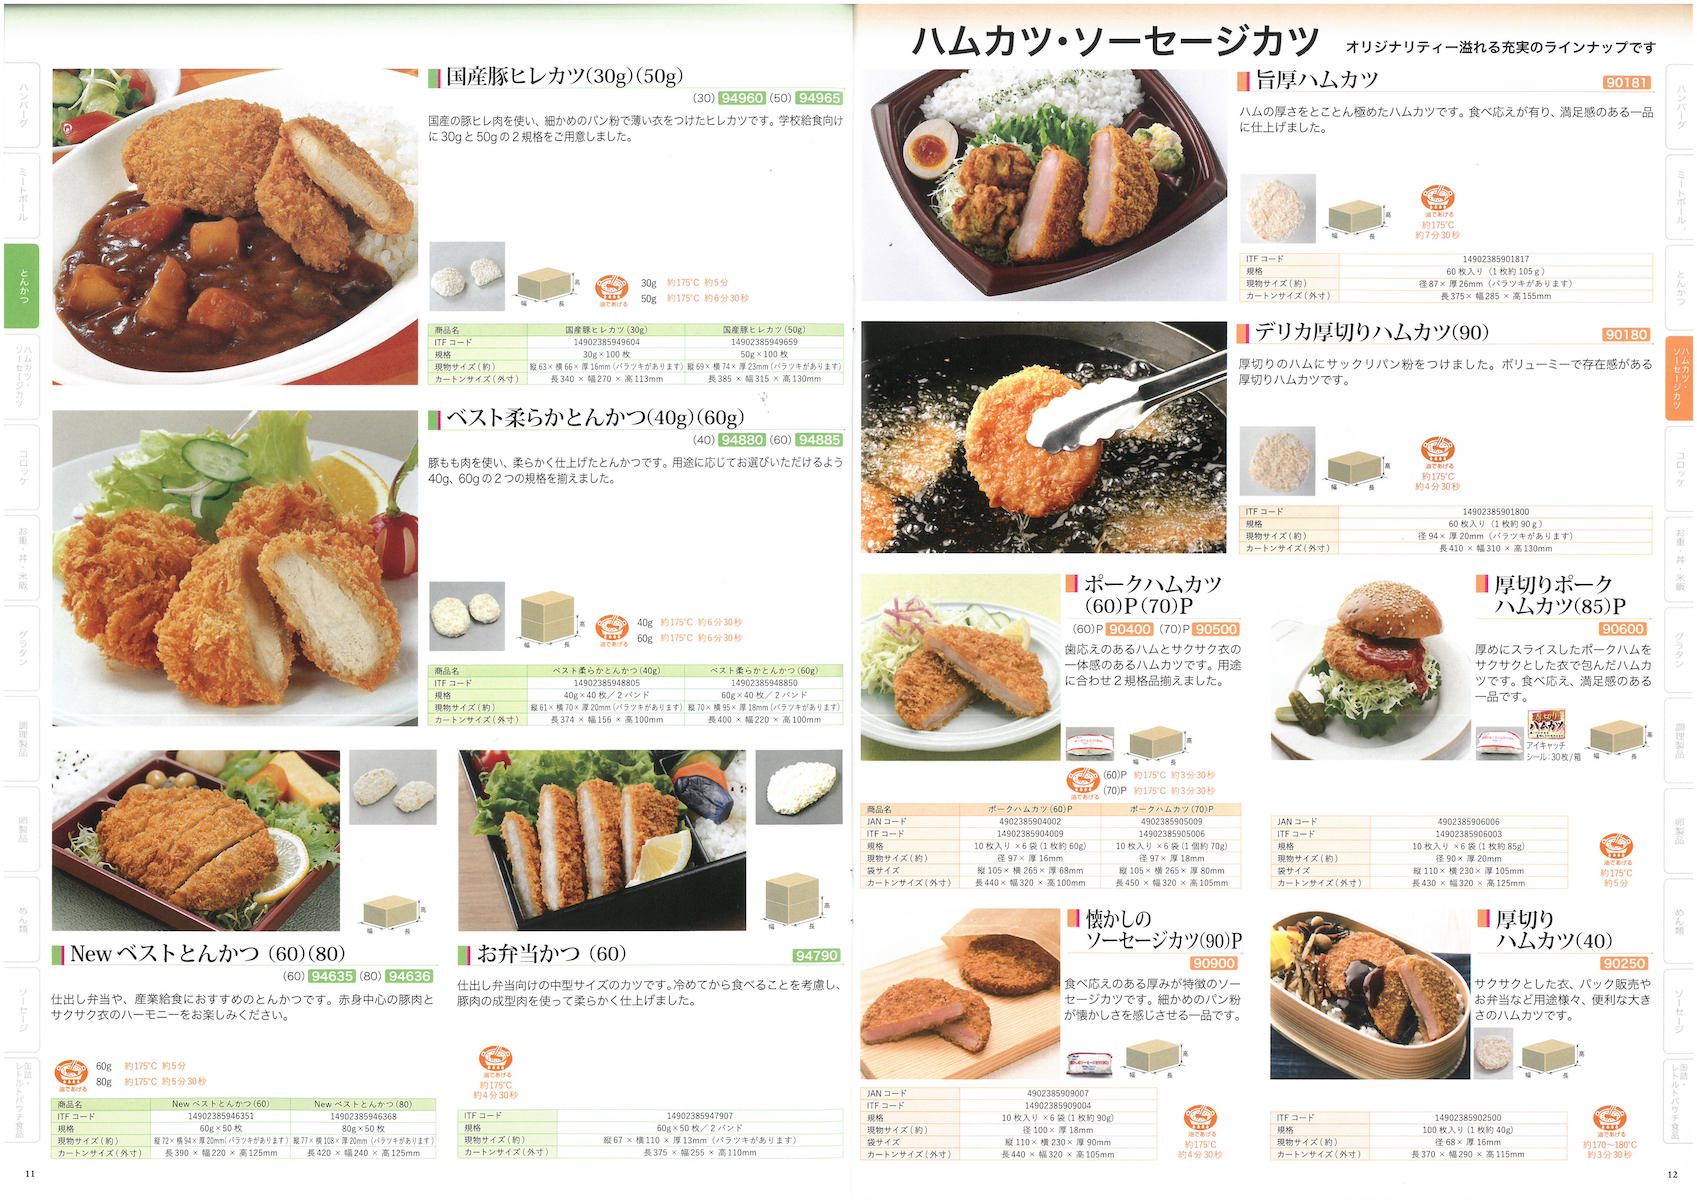 日東ベスト2021業務用食品総合カタログ　Best Selection